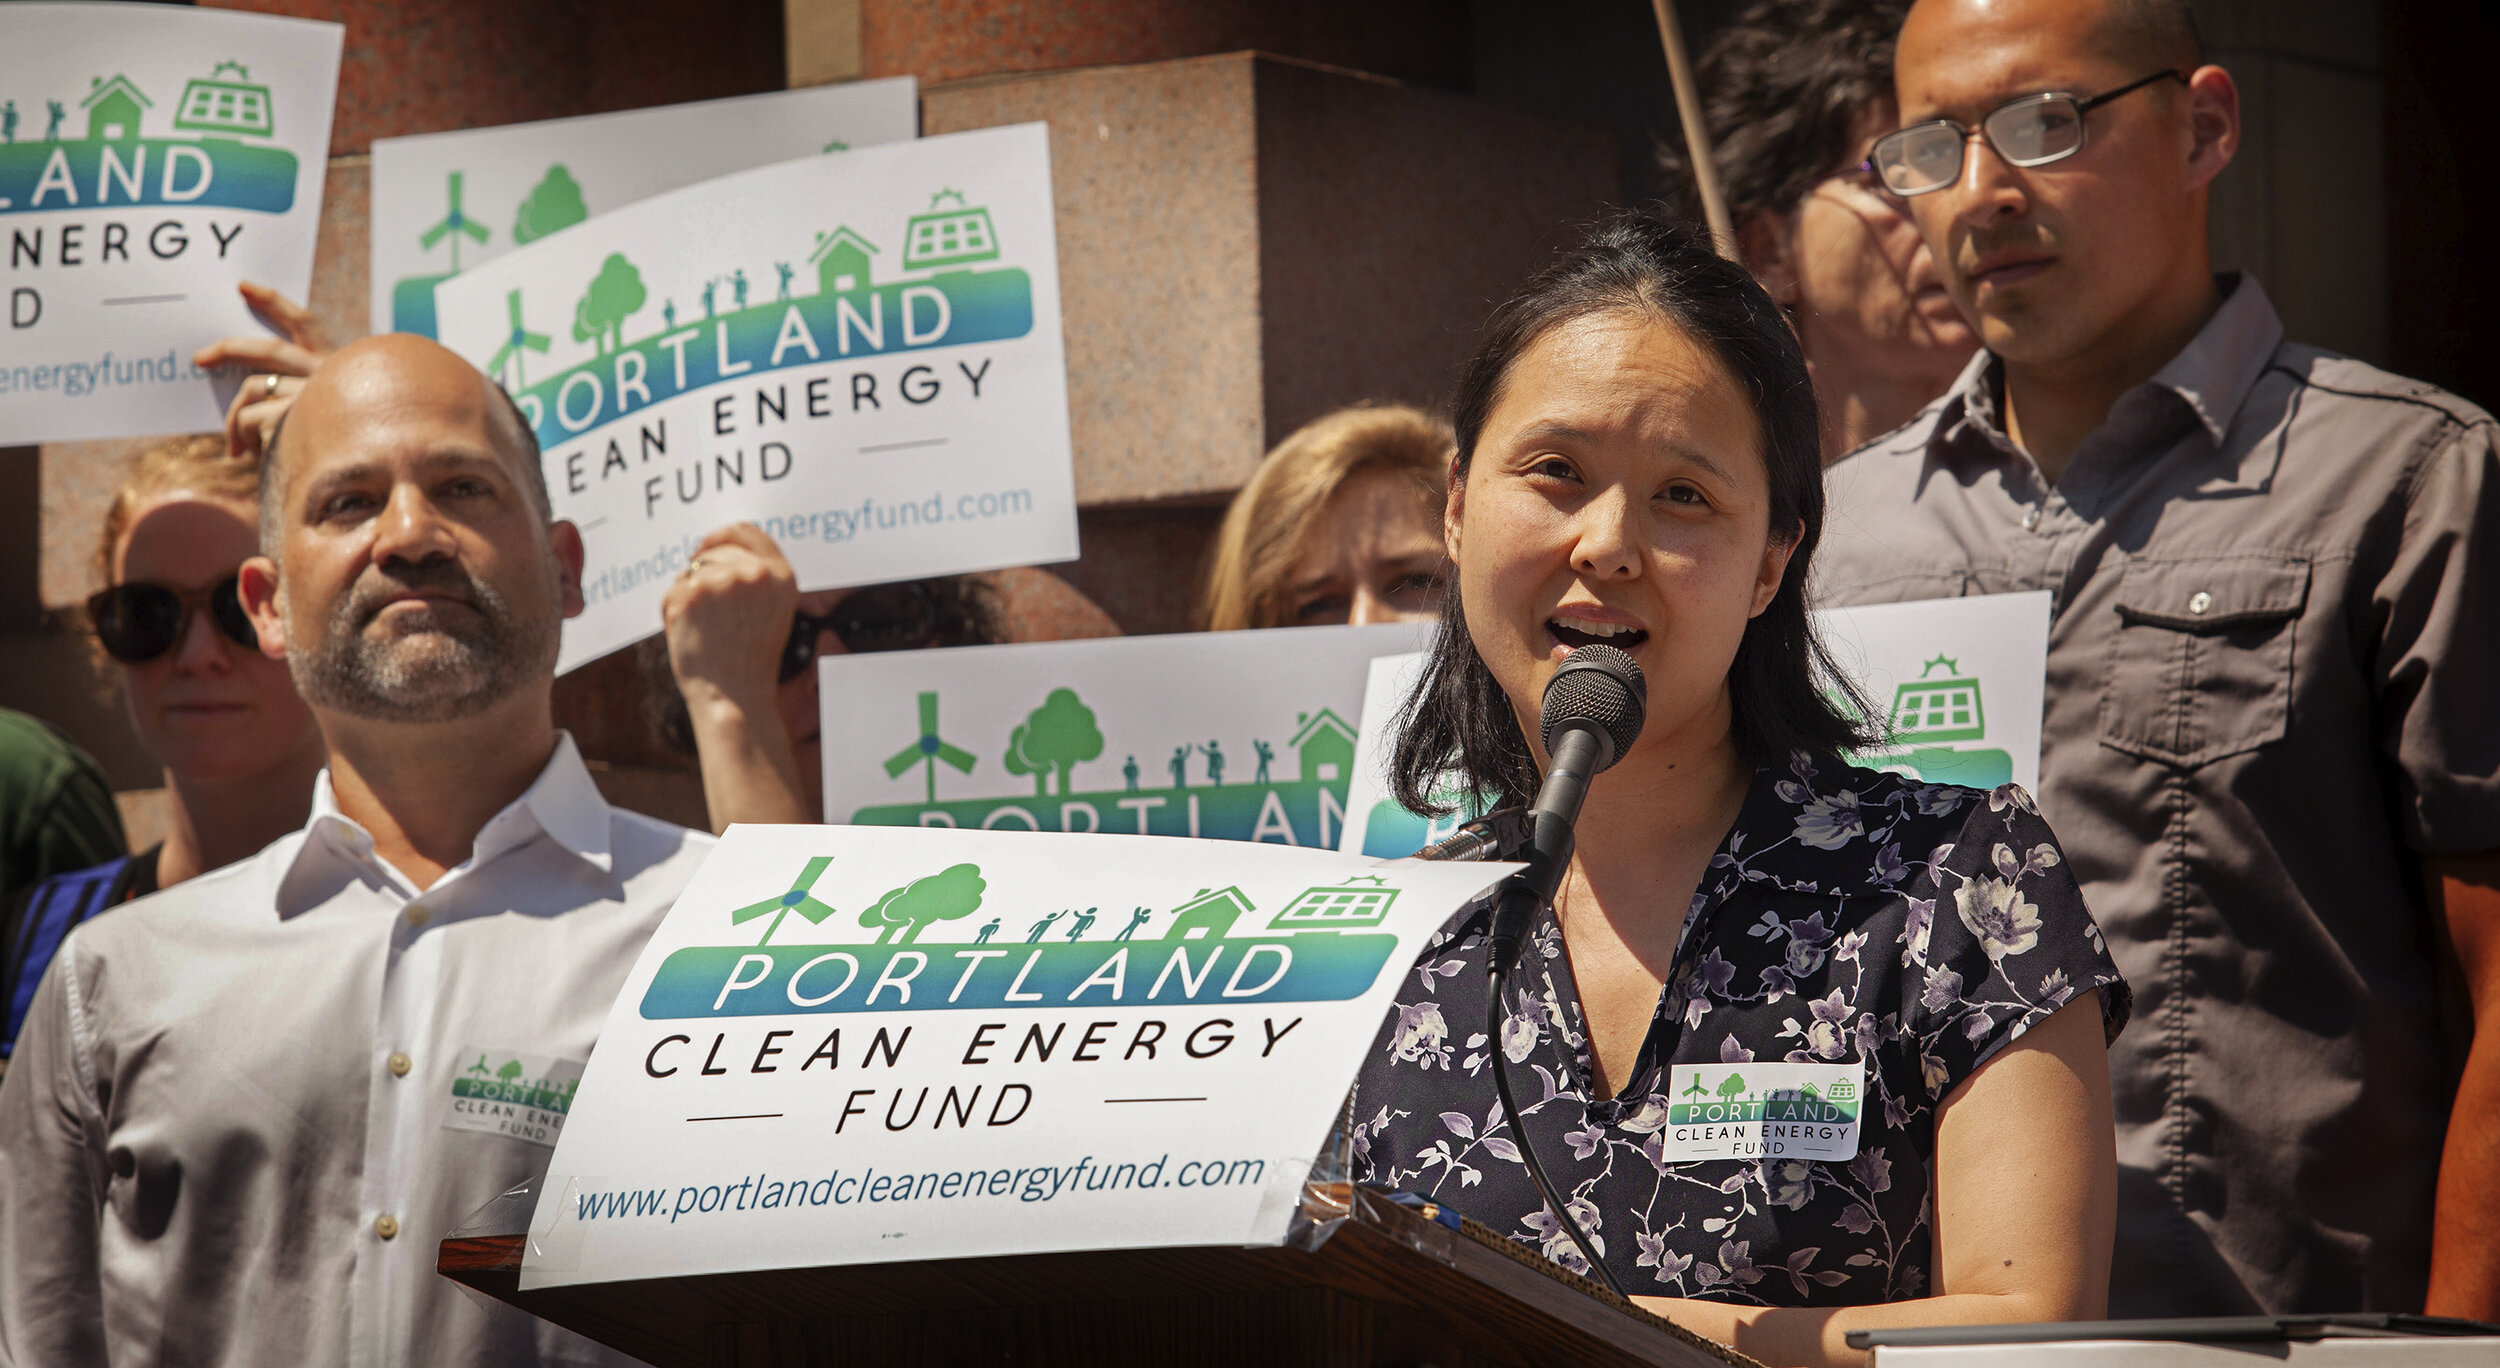 Portland Clean Energy Fund